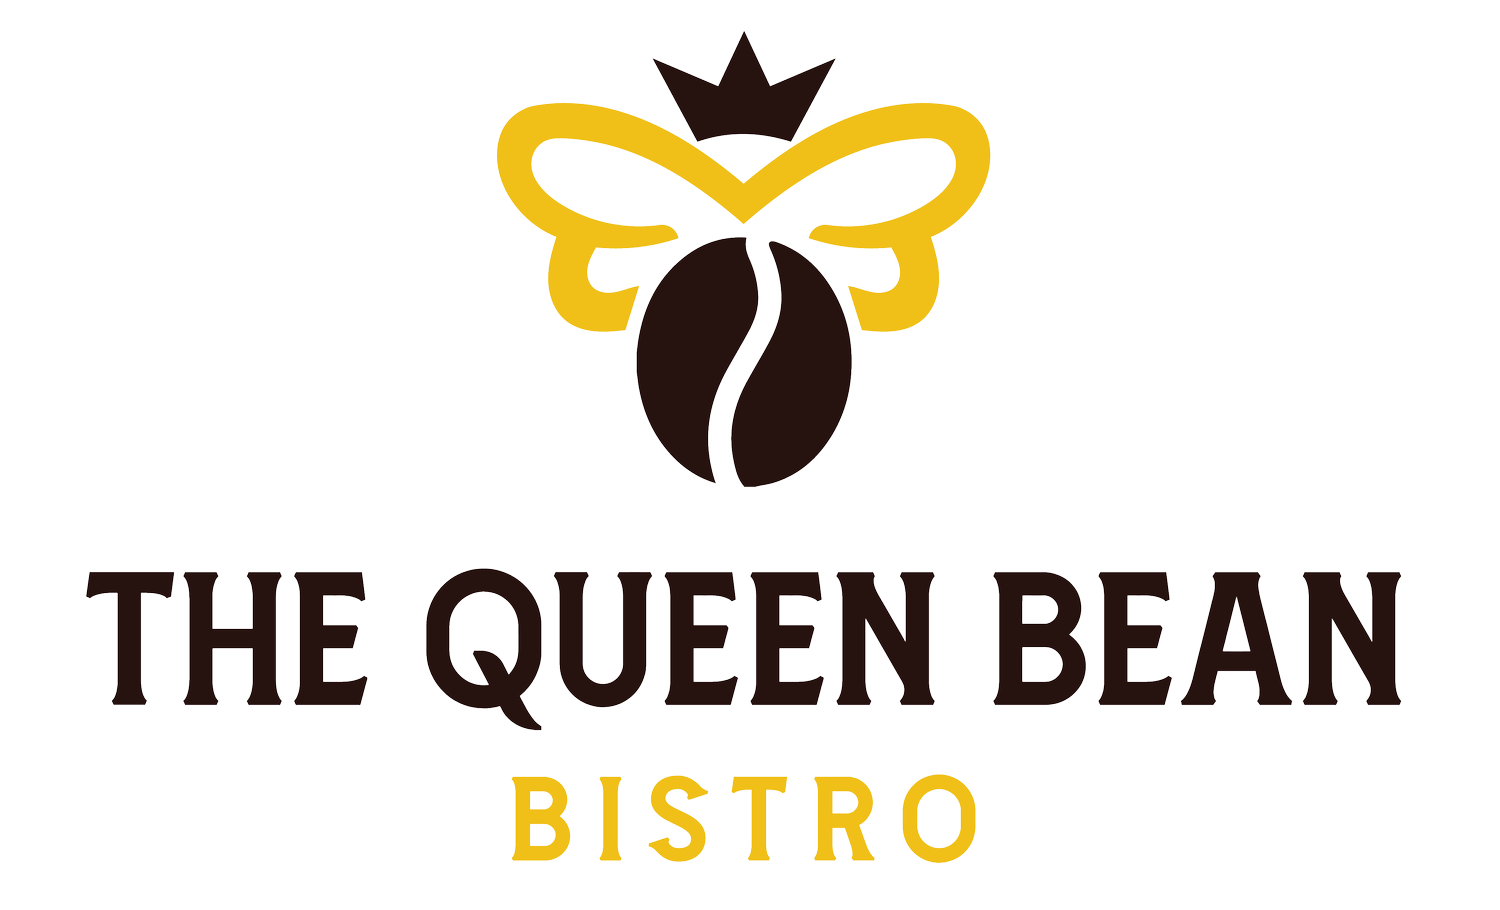 The Queen Bean Bistro